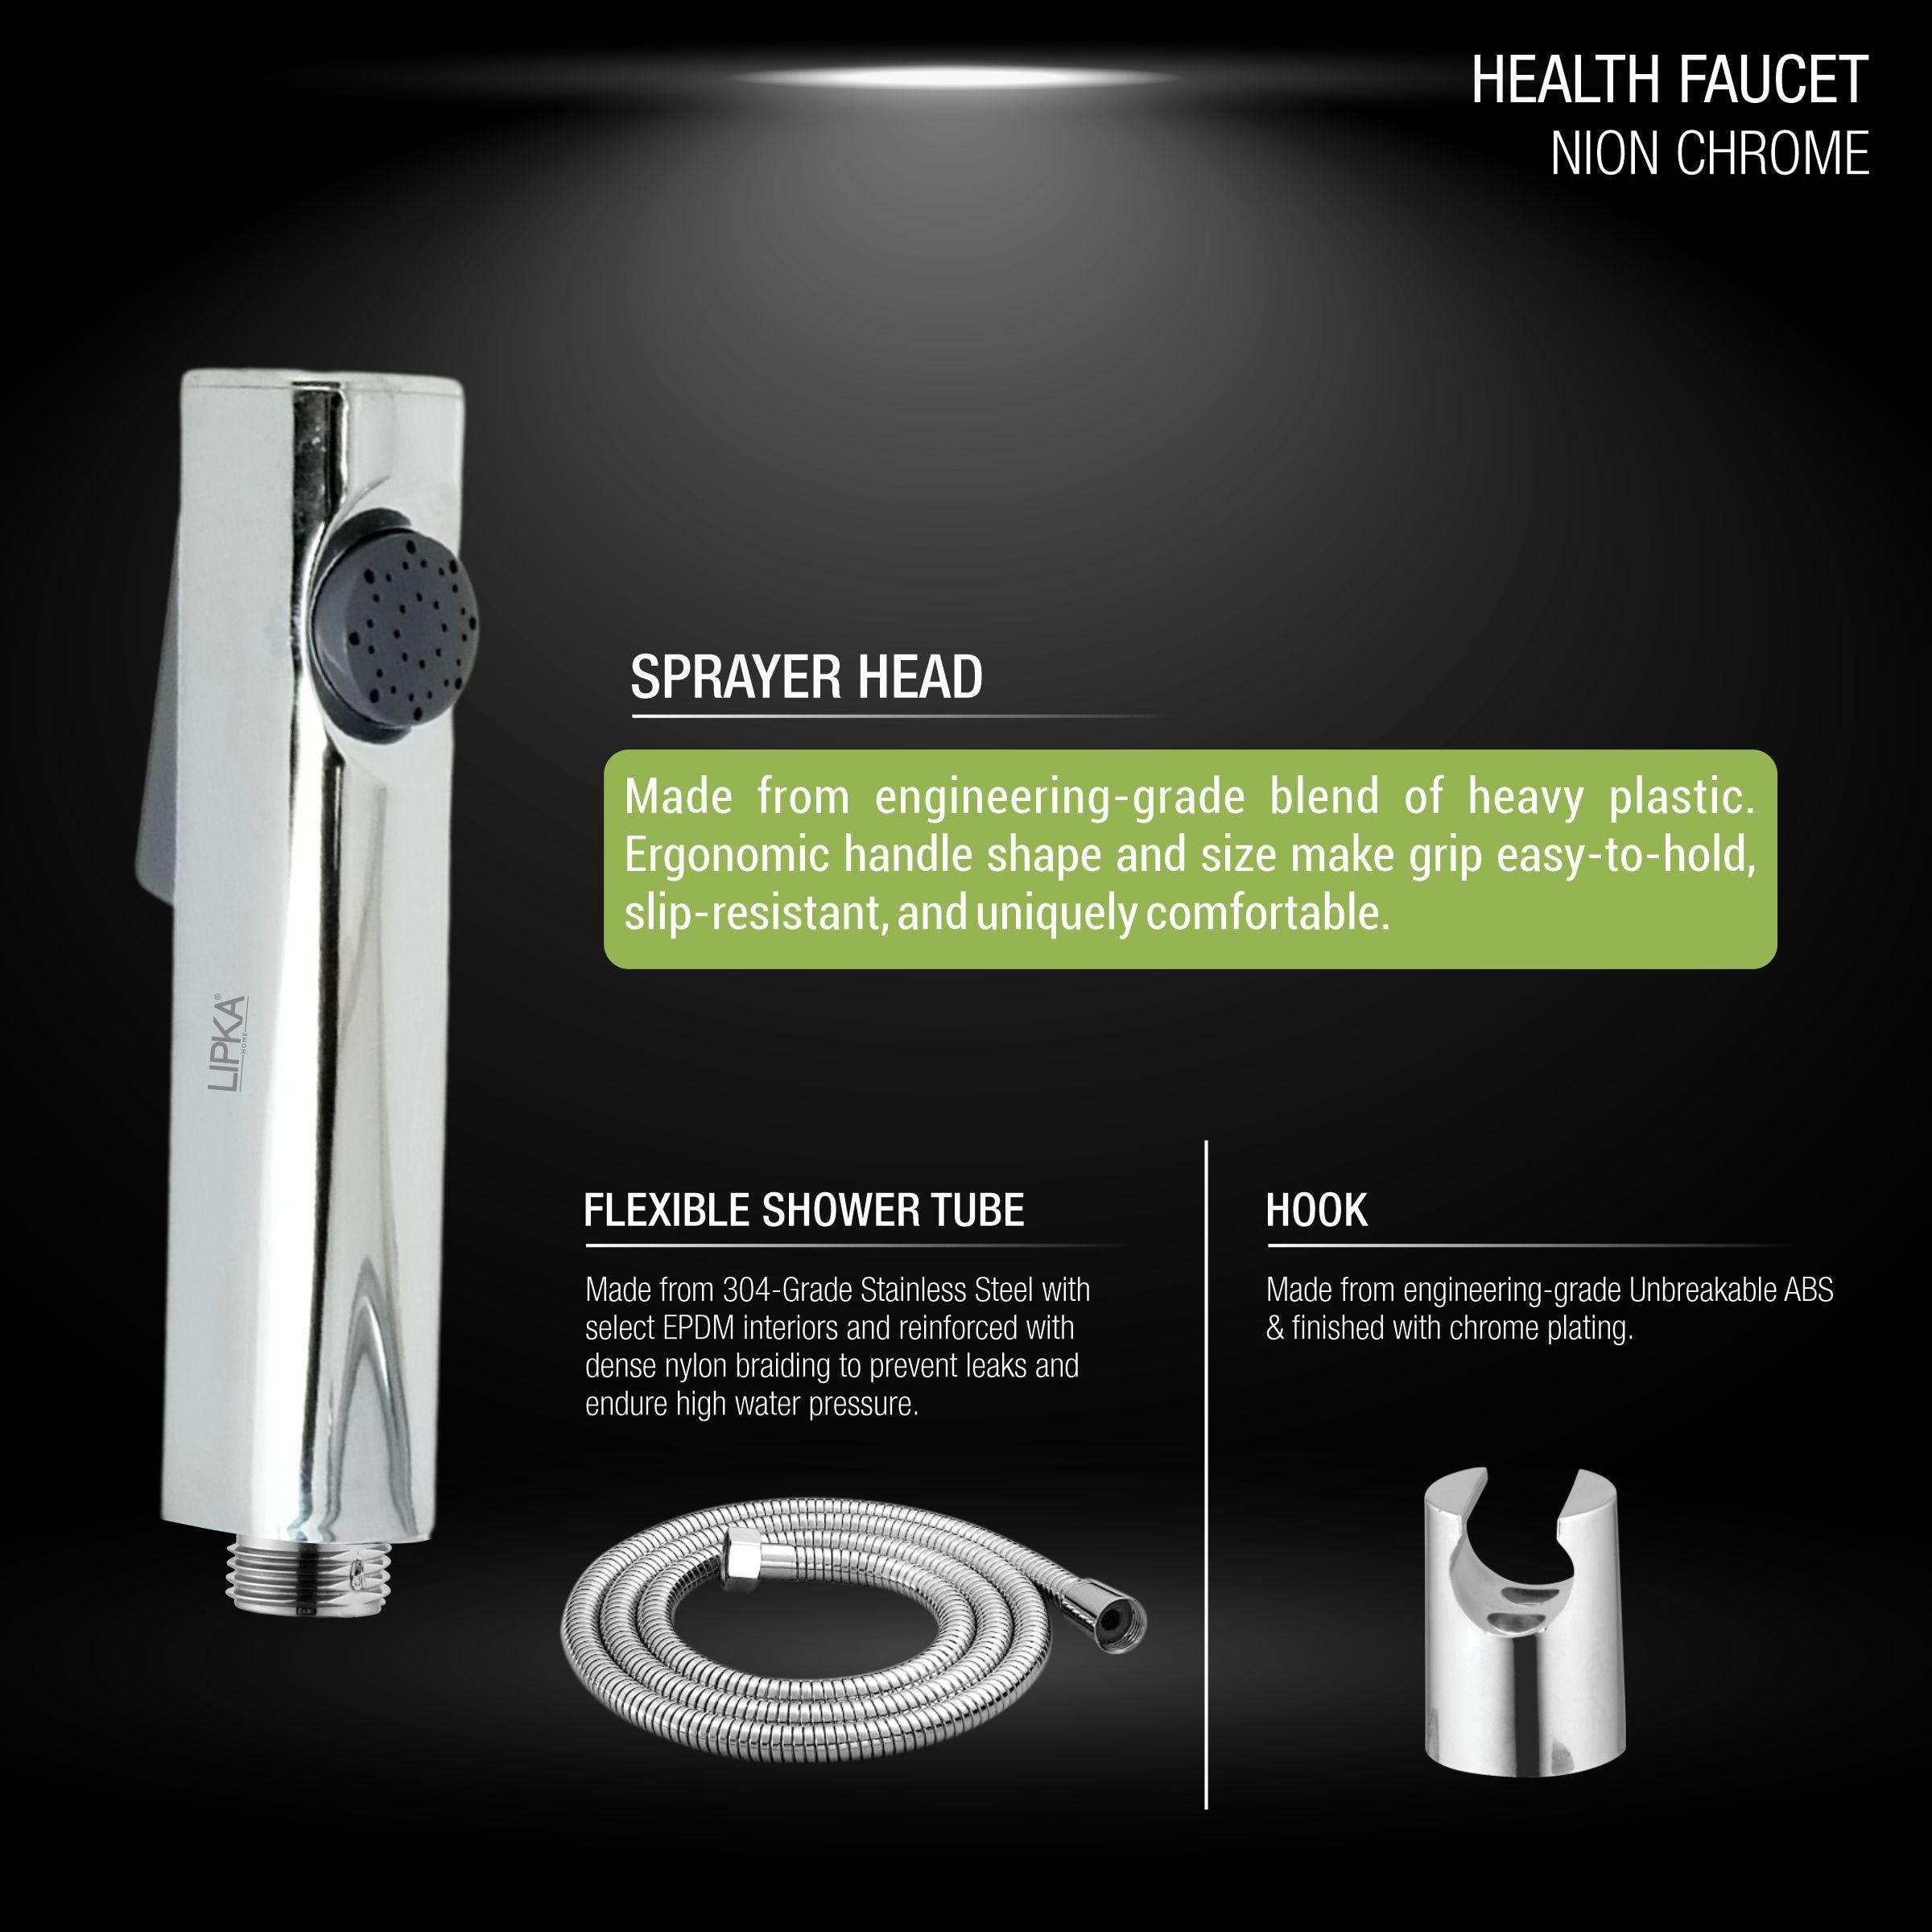 Nion Chrome Health Faucet (Complete Set) features